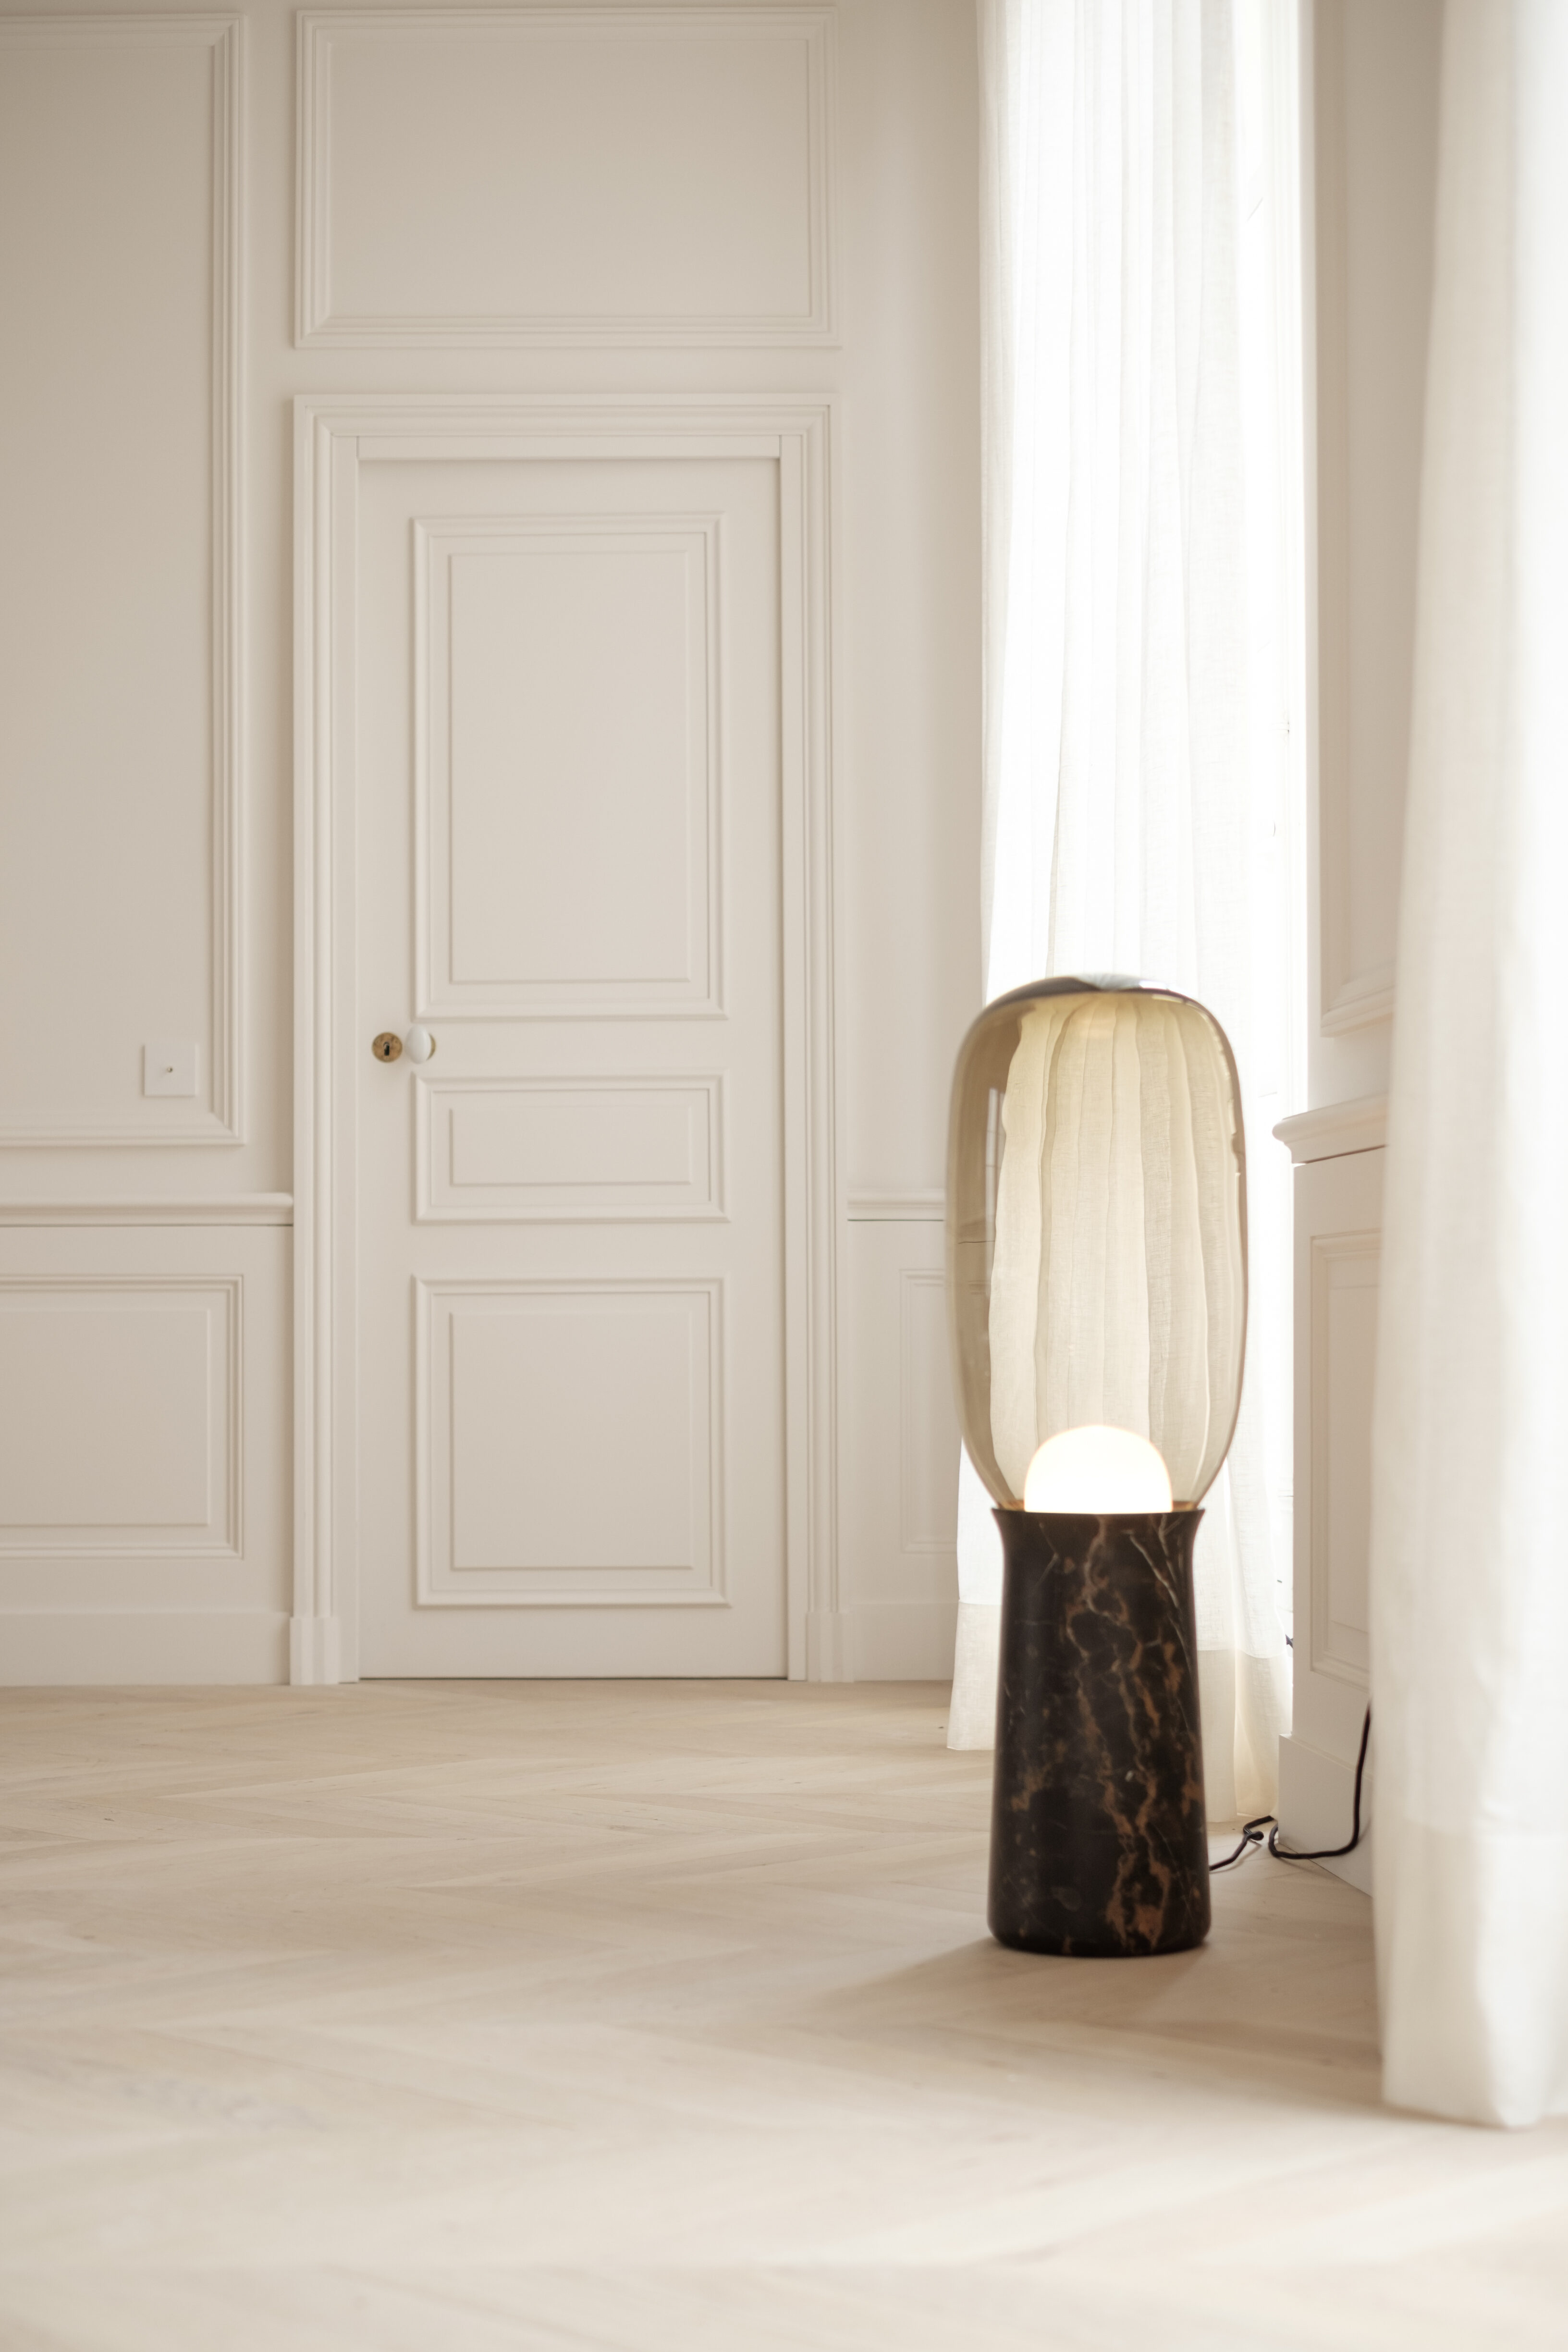 torch floor lamp dan yeffet particuliere stehlampe marmor rauchglas design inneneinrichtung einrichtungsidee